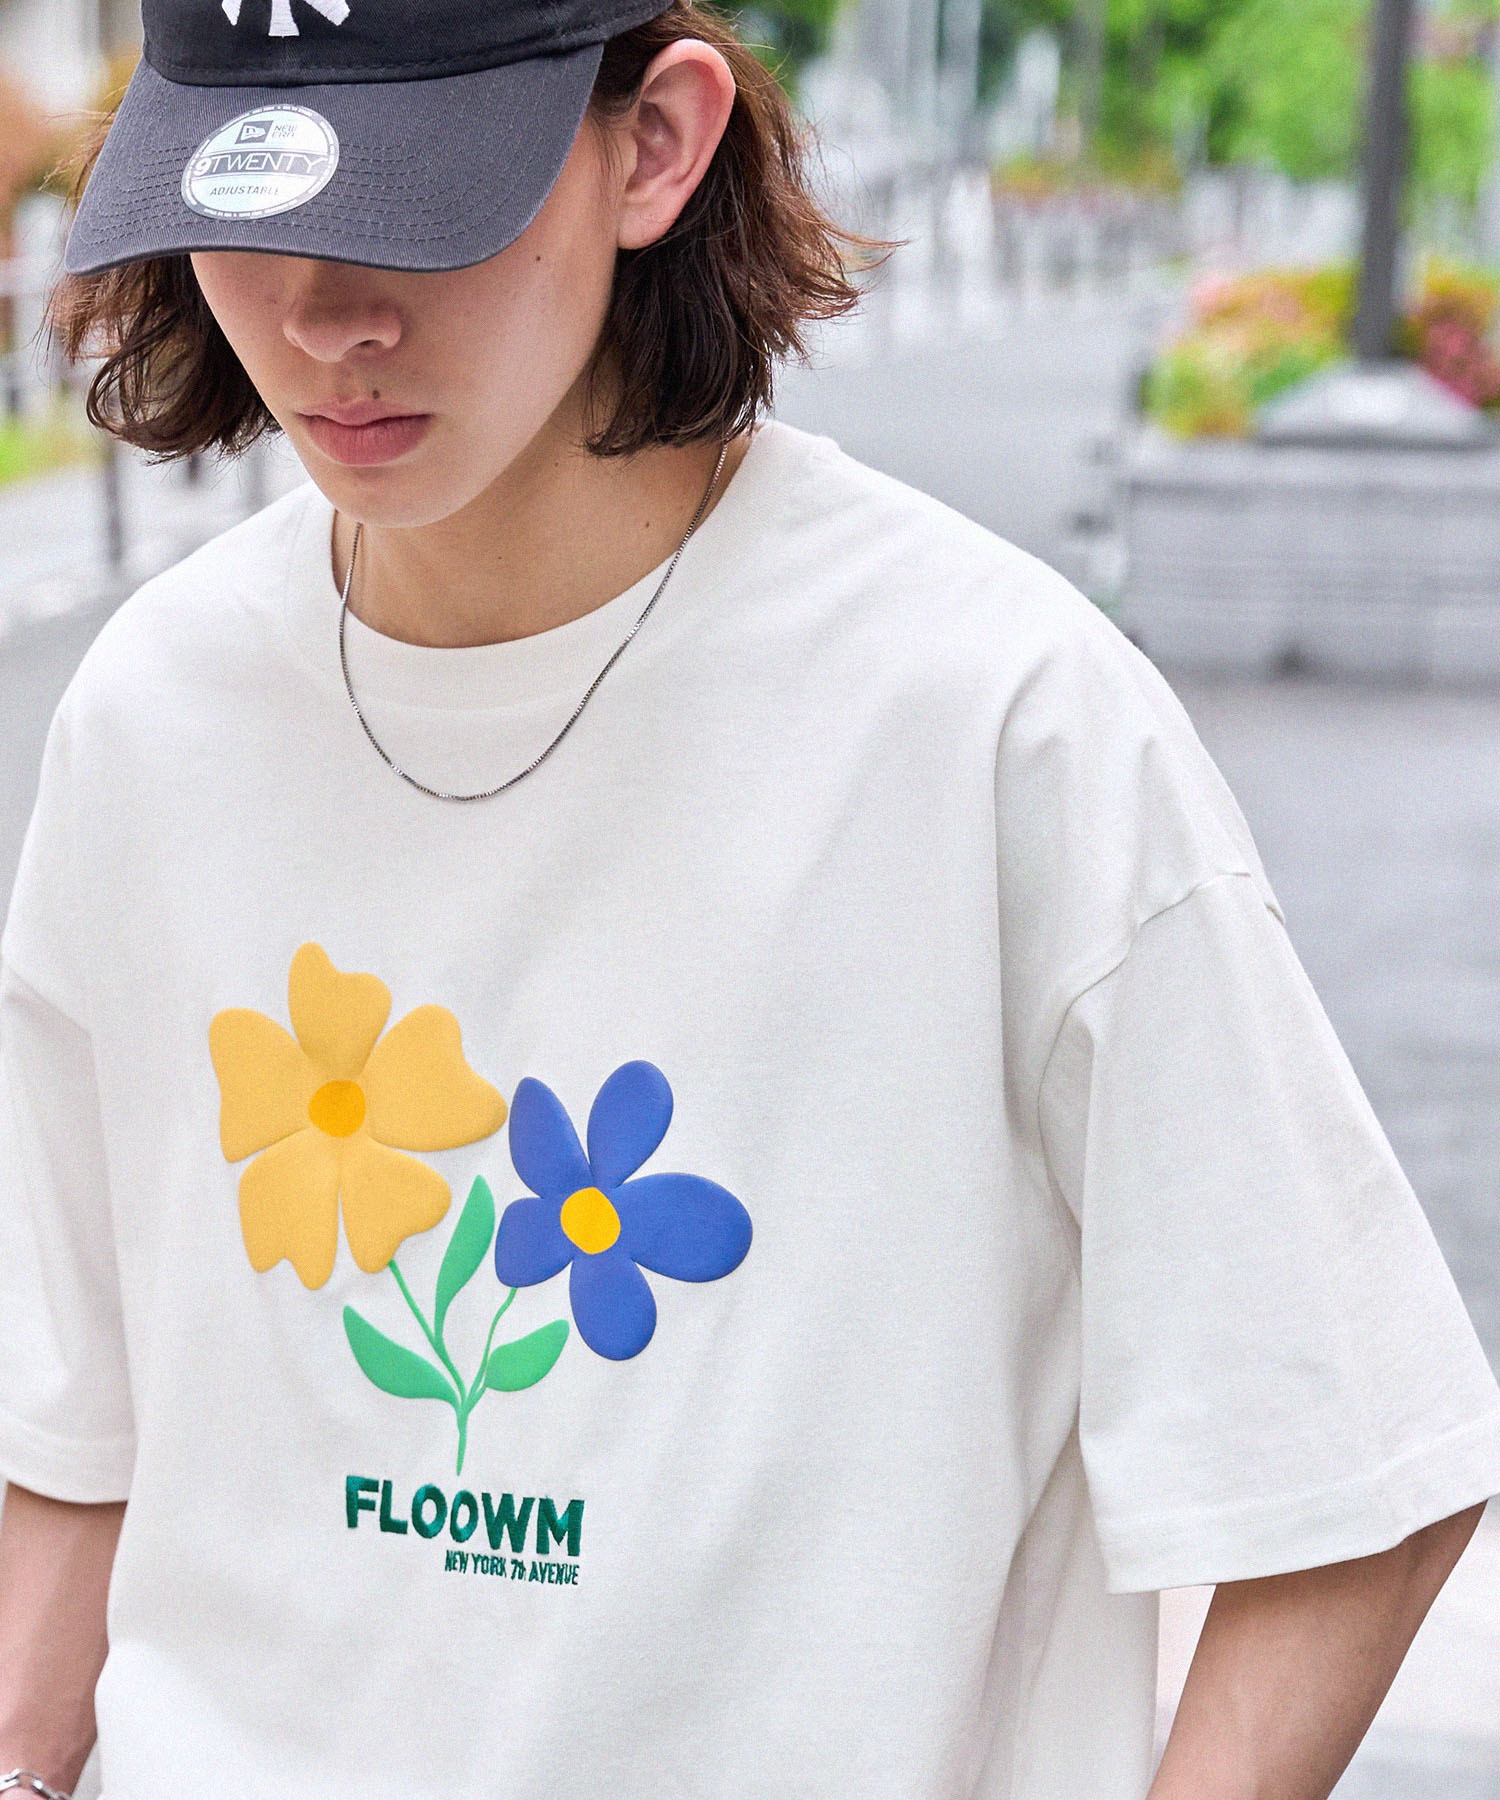 【FLOOWM】フラワーロゴ 発泡/刺繍コンビ ビッグシルエット半袖Tシャツ